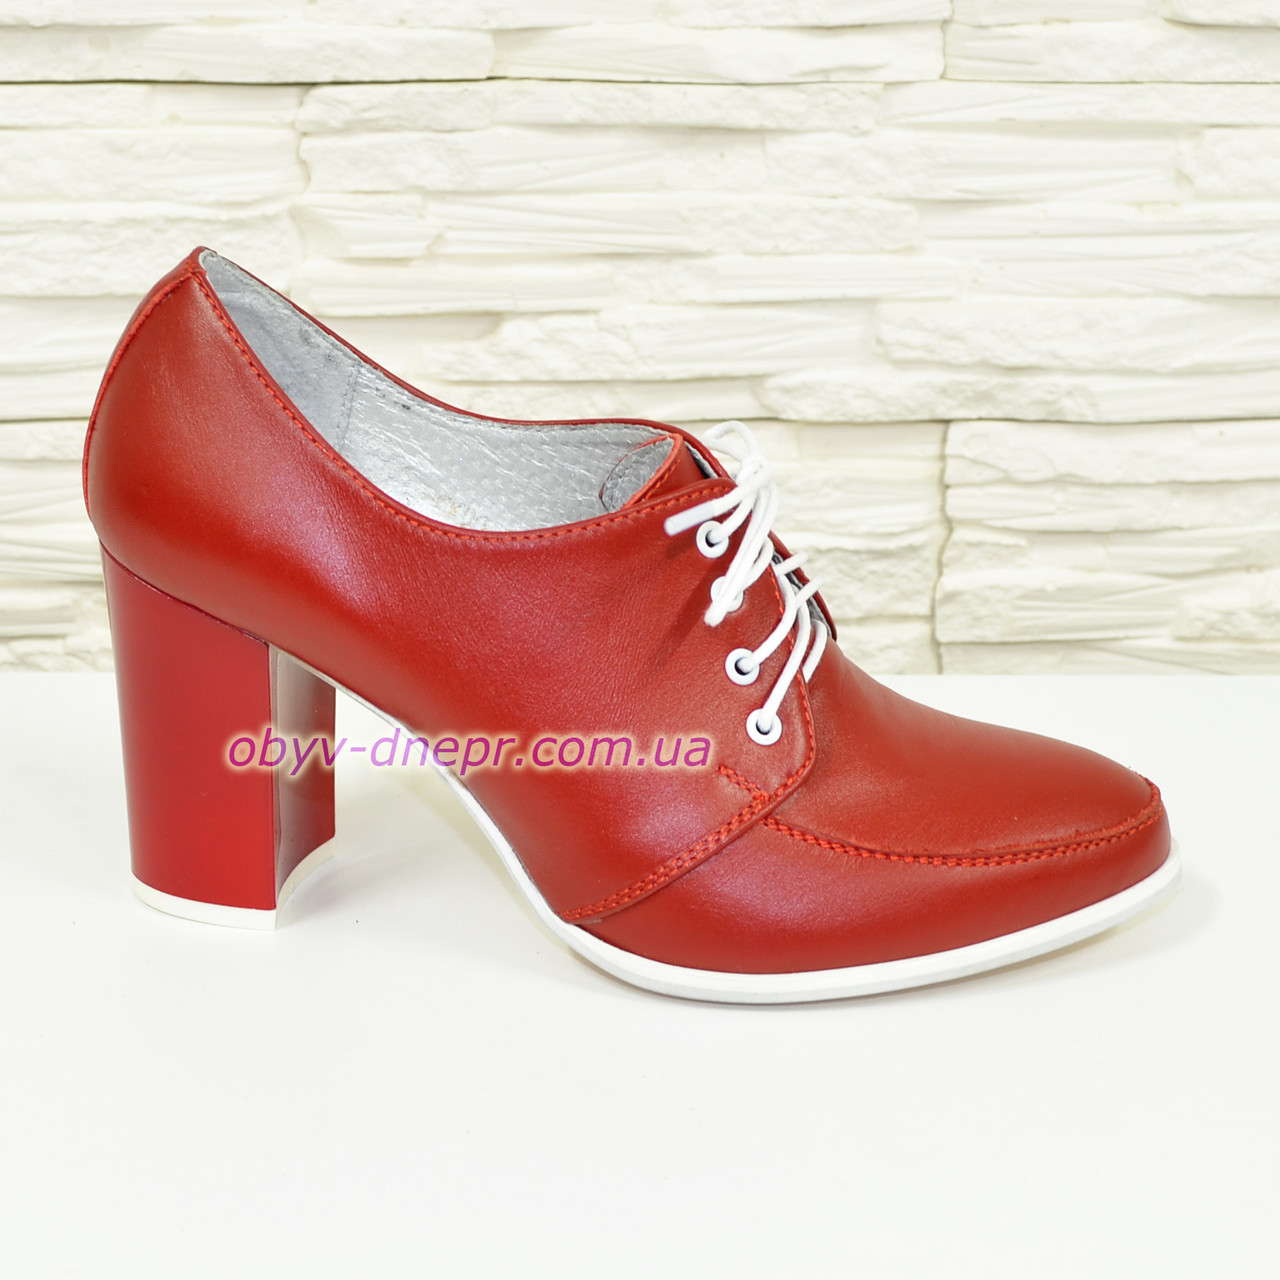 Туфлі жіночі червоні на високих підборах, натуральна шкіра